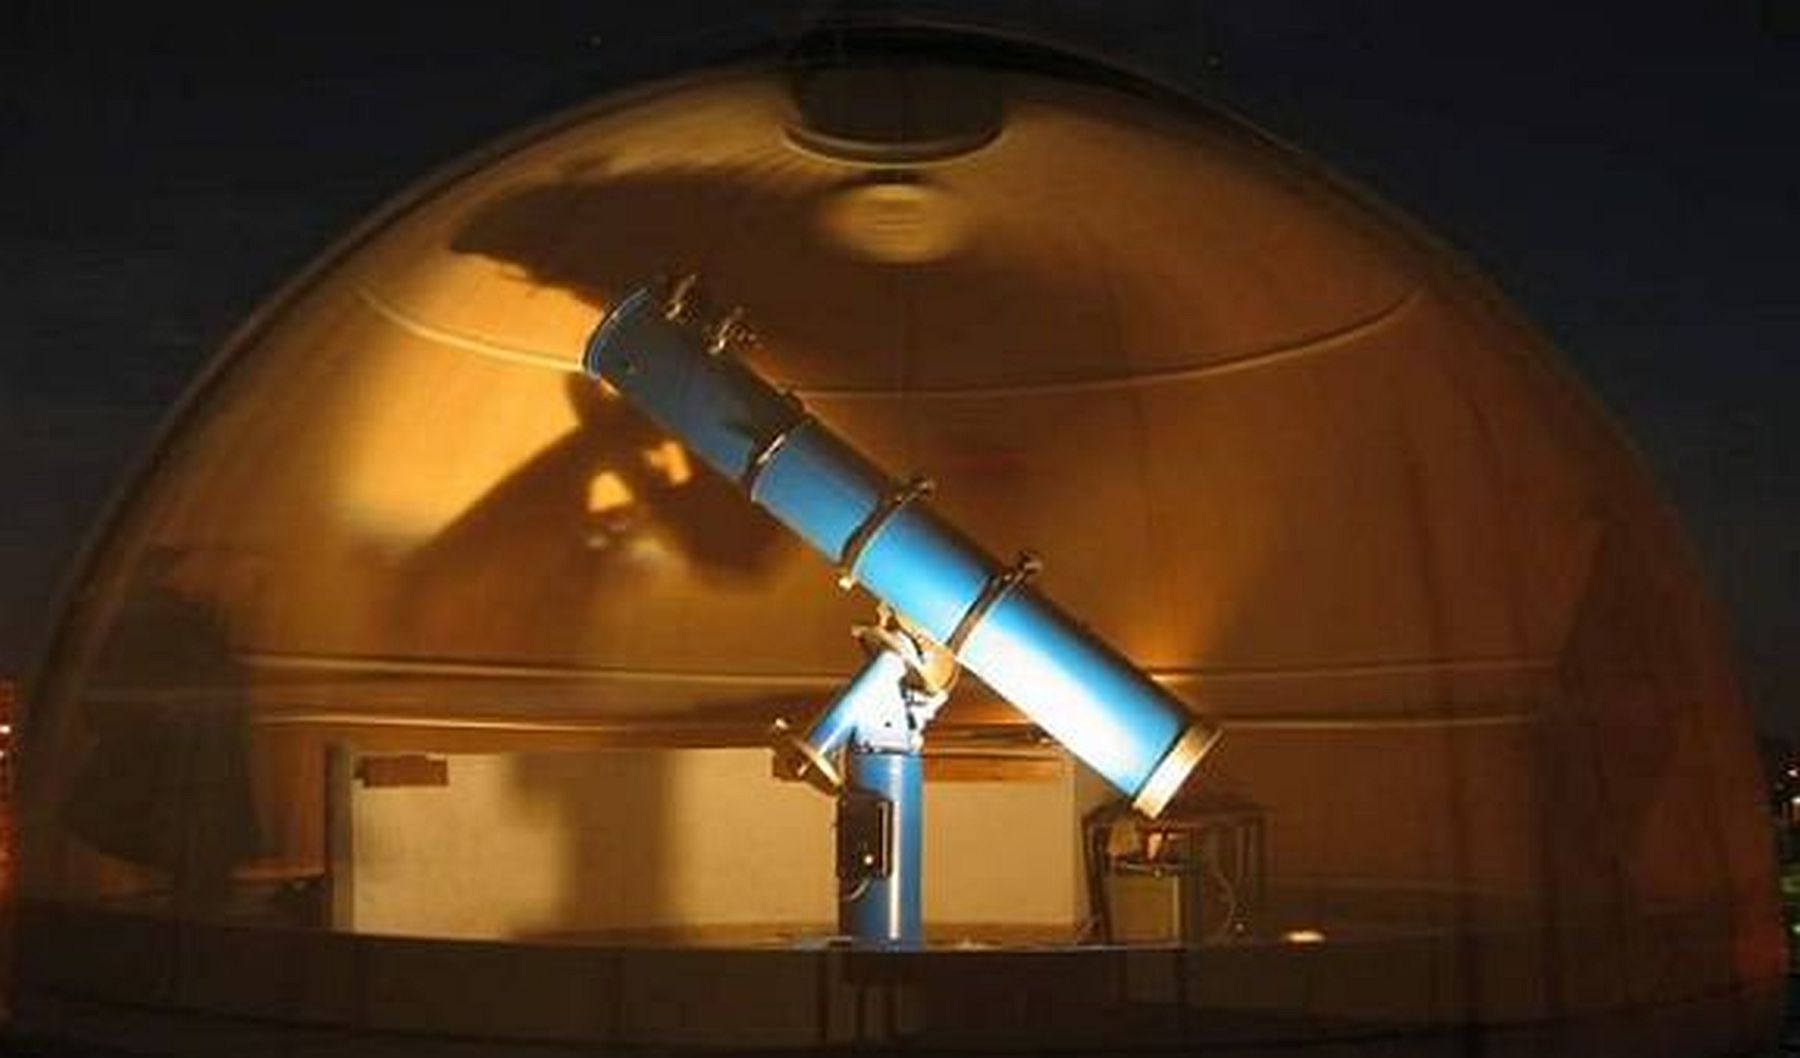 A Csillagászat Napja Székesfehérváron - előadások és távcsöves bemutatók is lesznek